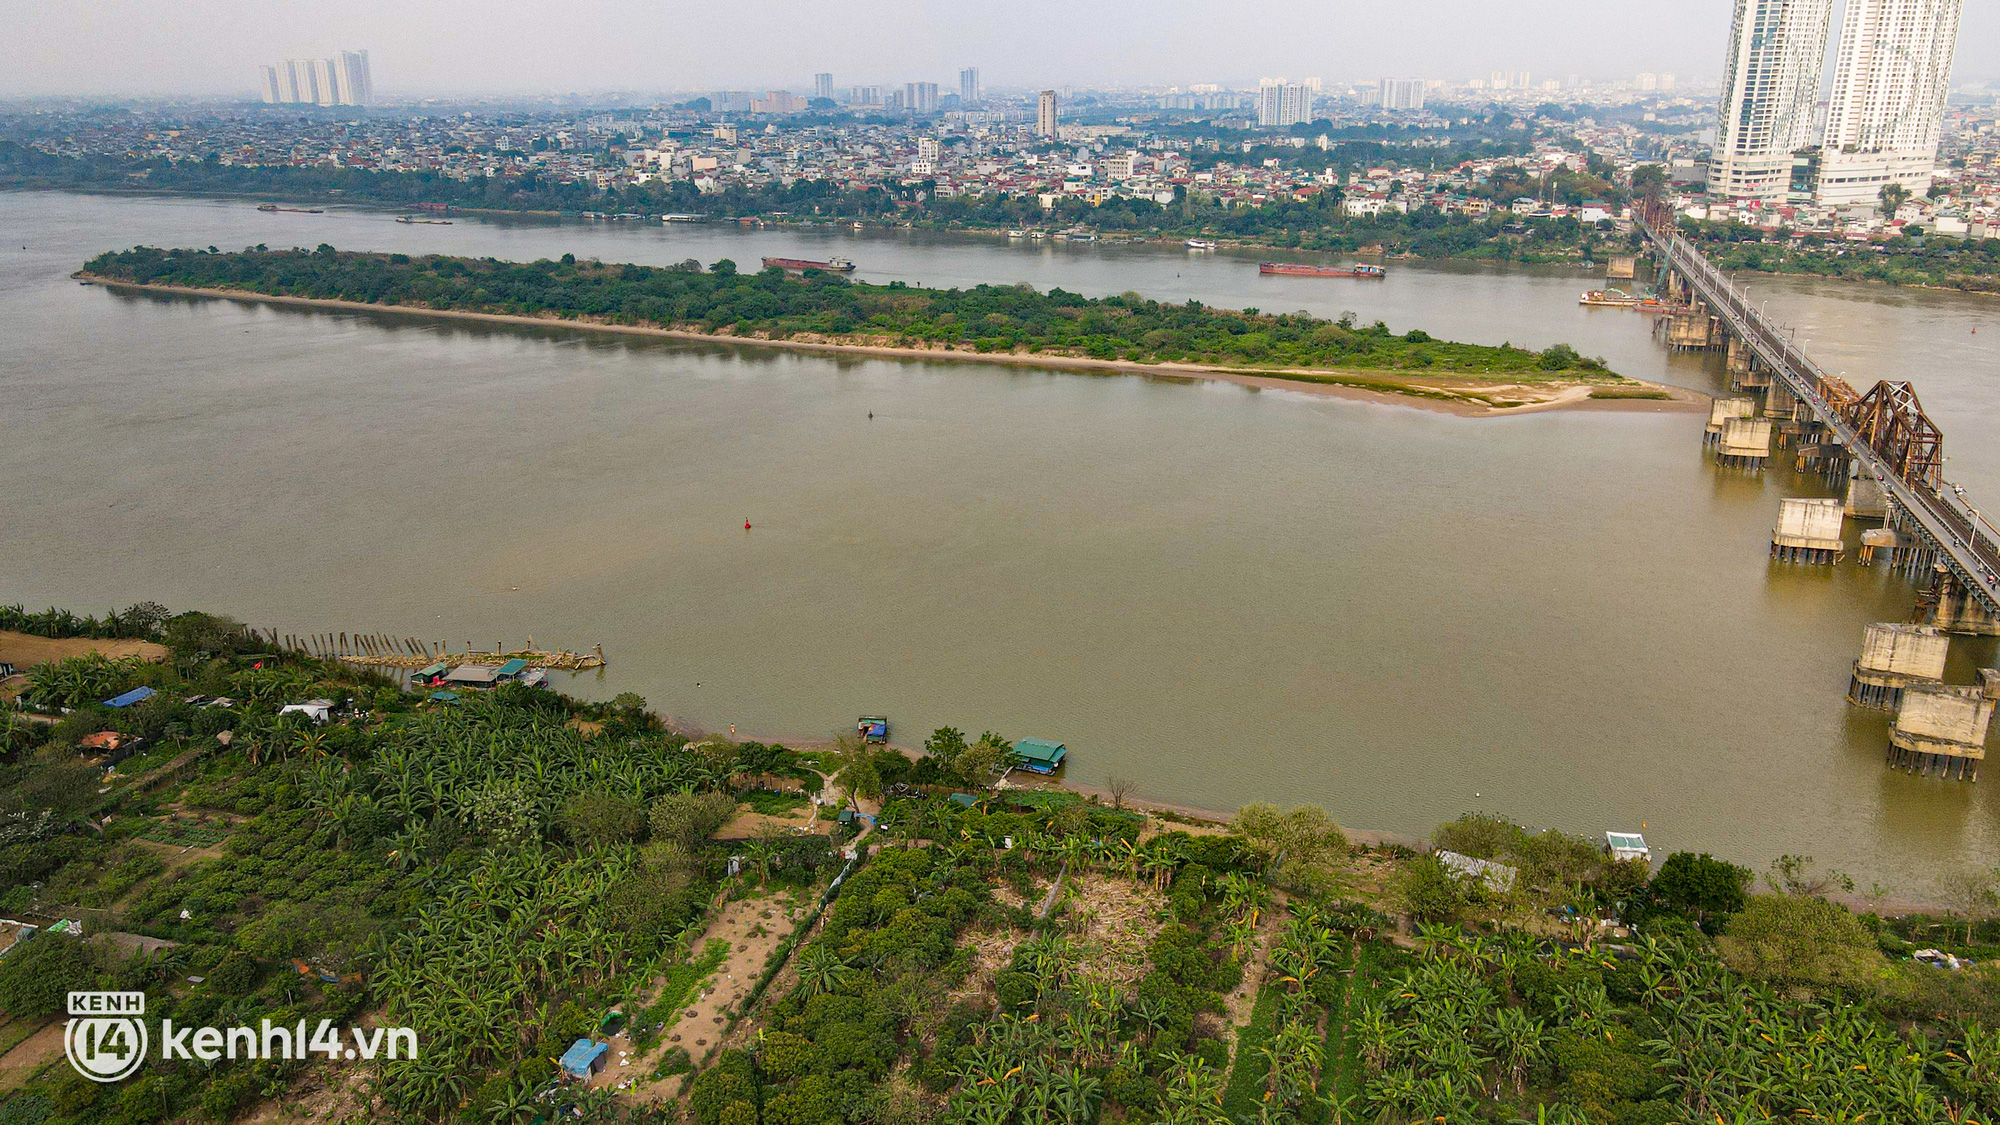 Hà Nội: Cận cảnh vẻ đẹp hoang sơ của bãi giữa sông Hồng được đề xuất cải tạo thành công viên - Ảnh 3.